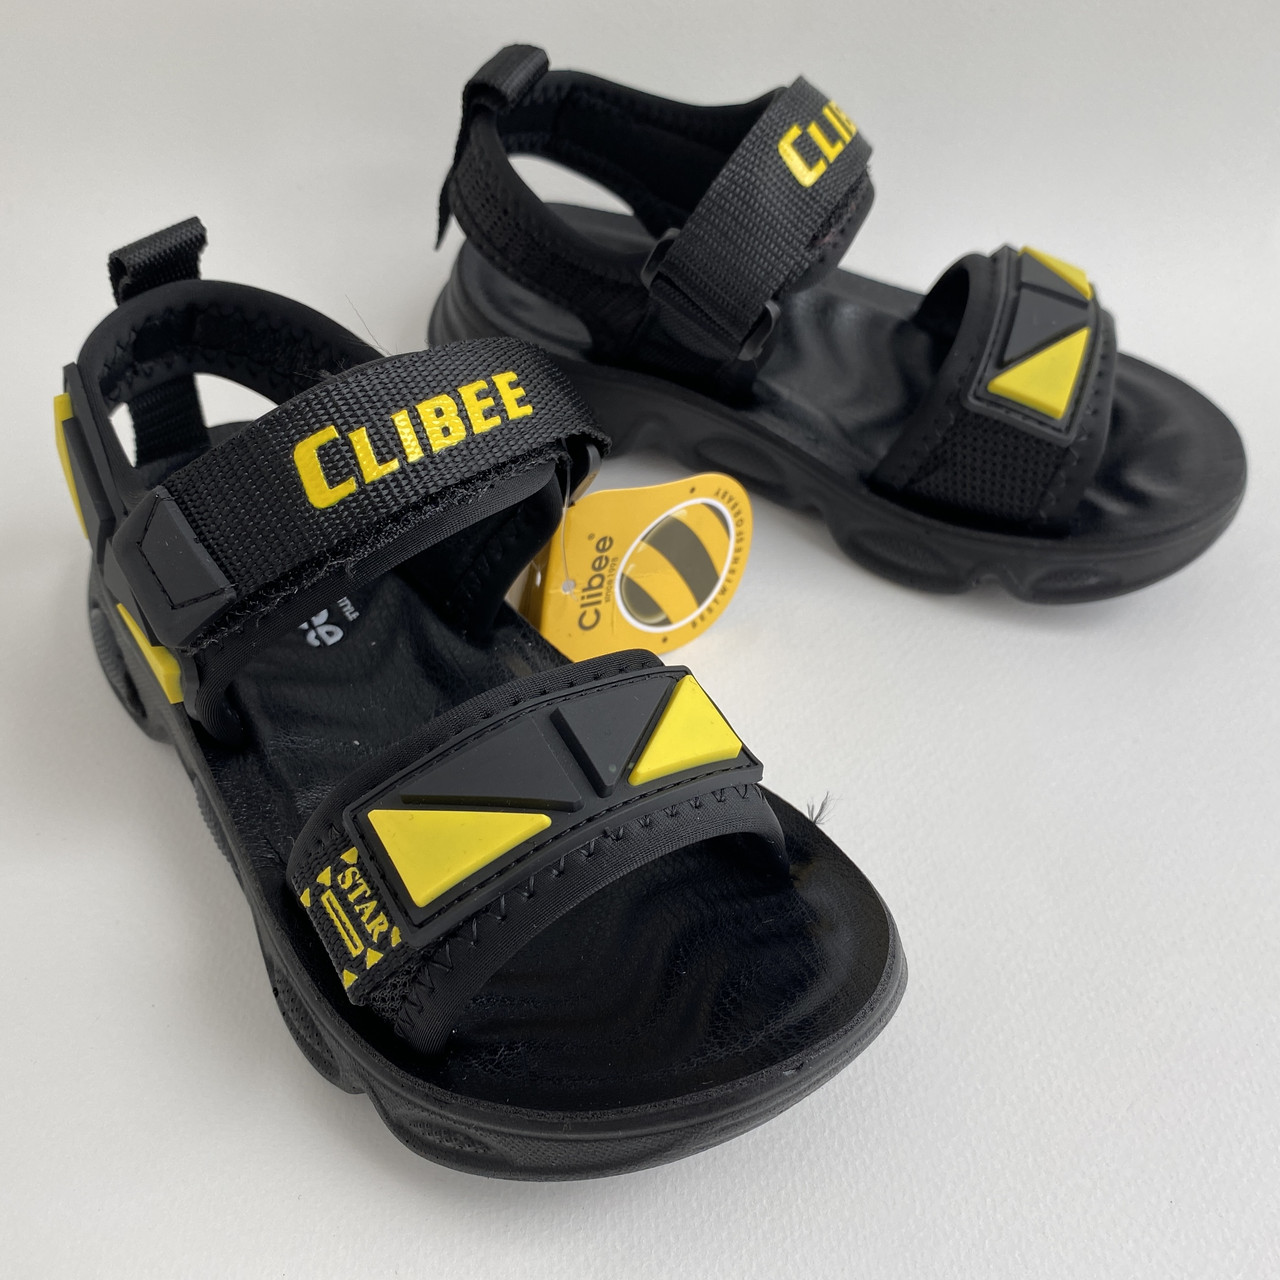 

Босоножки детские Clibee размер 28 стелька 17,5 см текстильные спортивные для мальчика Z850A чёрный/жёлтый, Черный